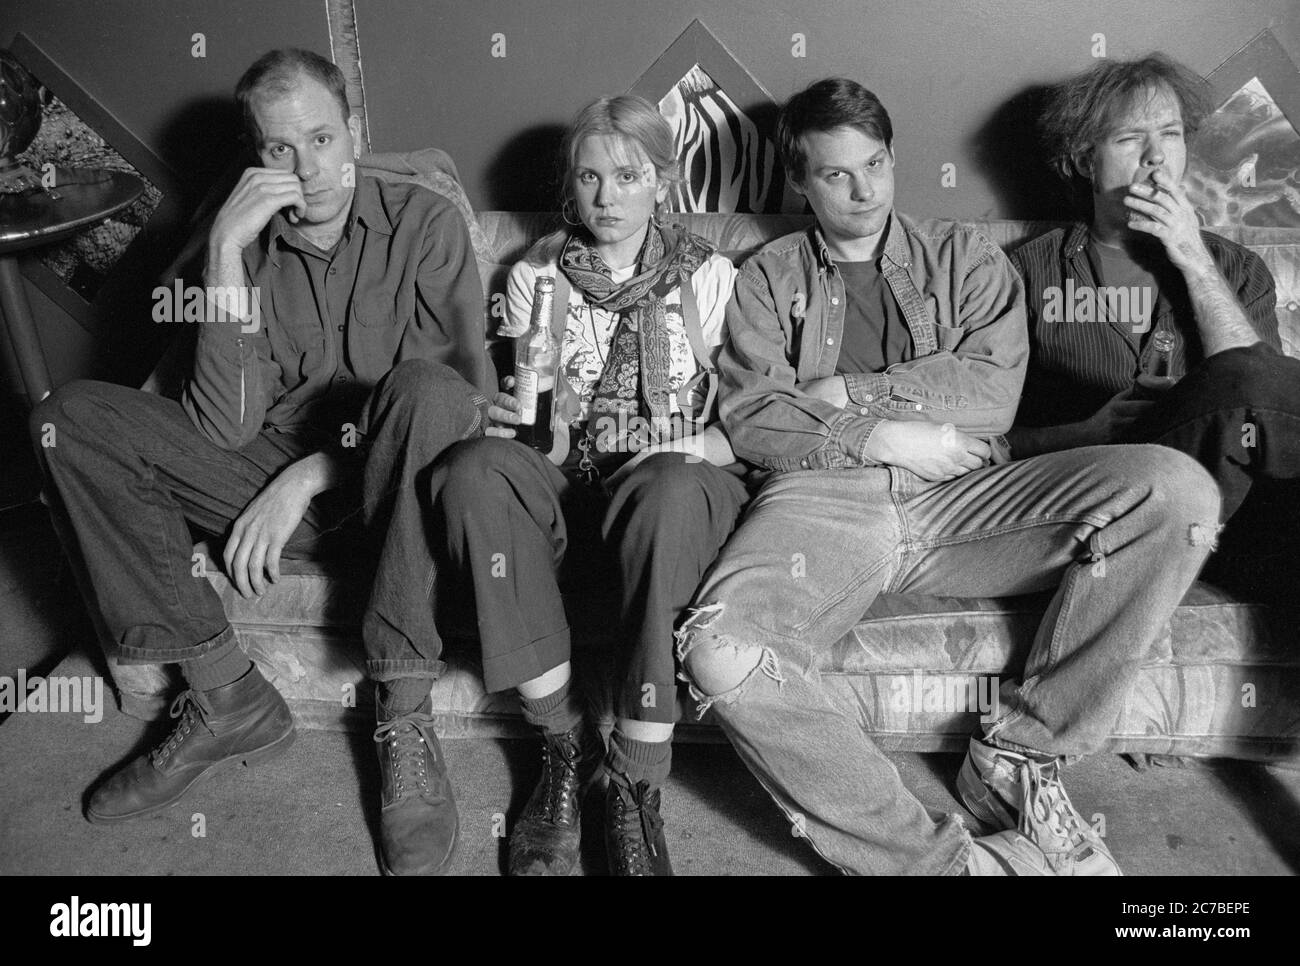 Posierte Aufnahme der Band Elventh Dream Day im Musiklokal Lounge Axe in Chicago, bevor sie dort an diesem Abend eine Show auftrat. Von links nach rechts: Doug McCombs, Janet Beveridge Bean, Rick Rizzo und Matthew 'Wink' O'Bannon. Stockfoto